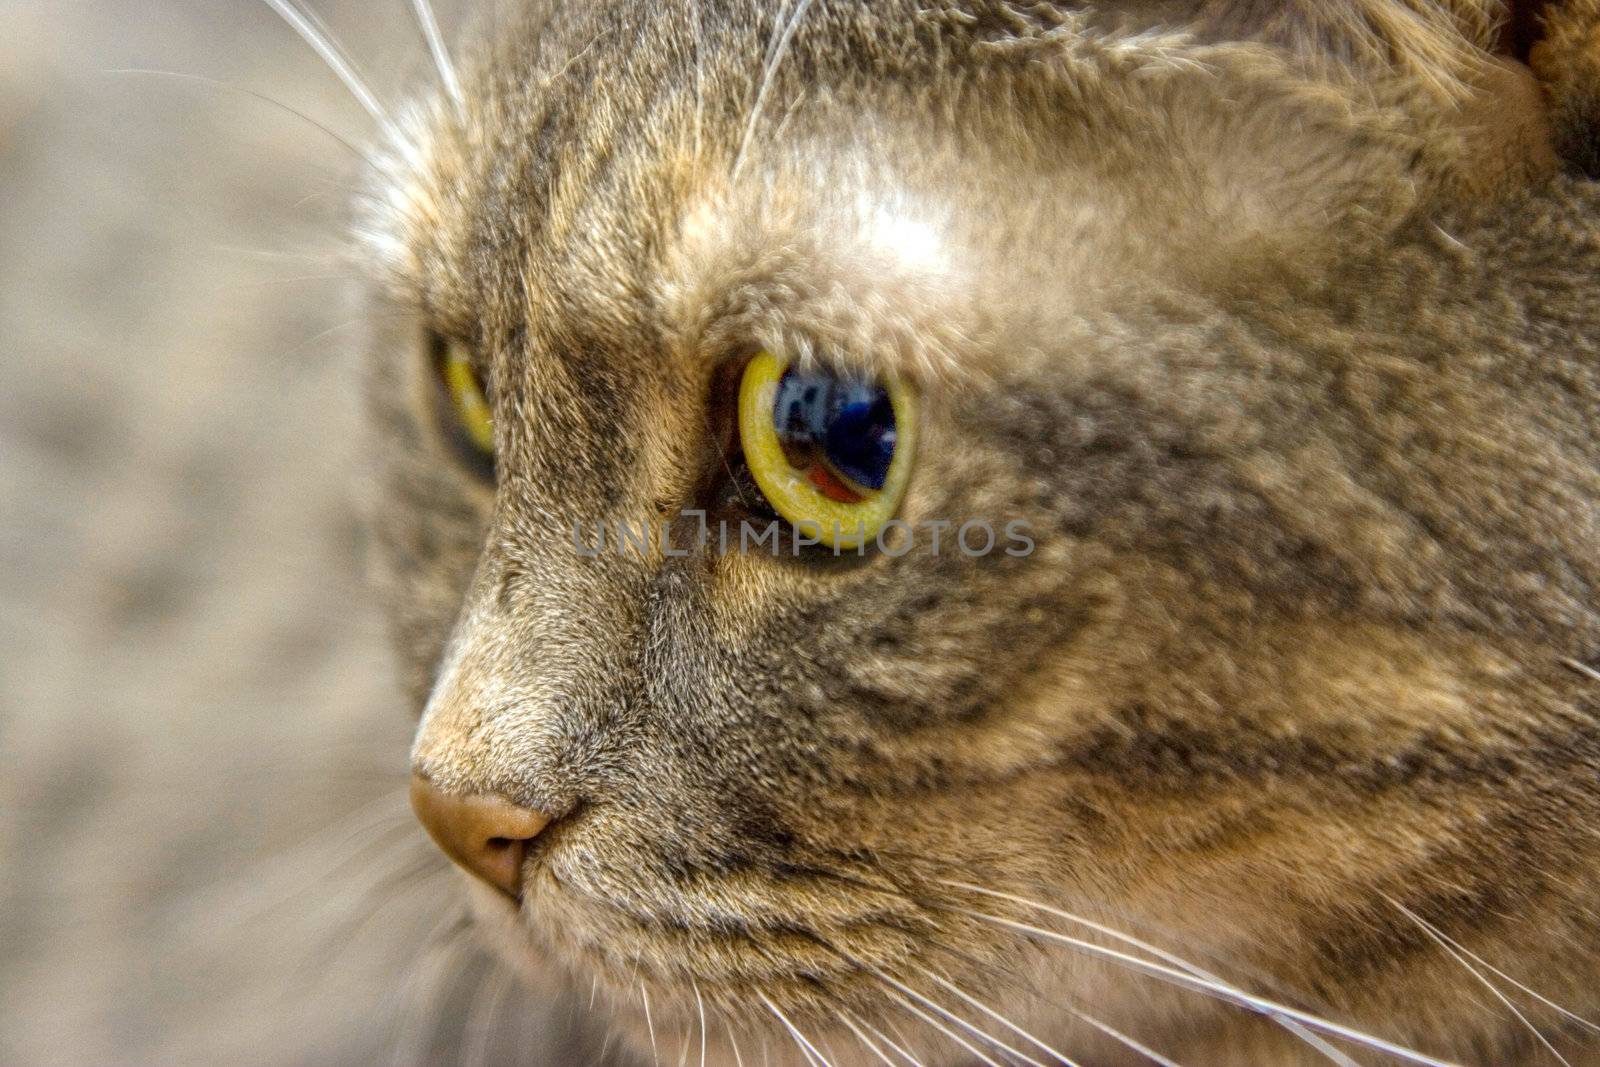 Cat's eye by phakimata